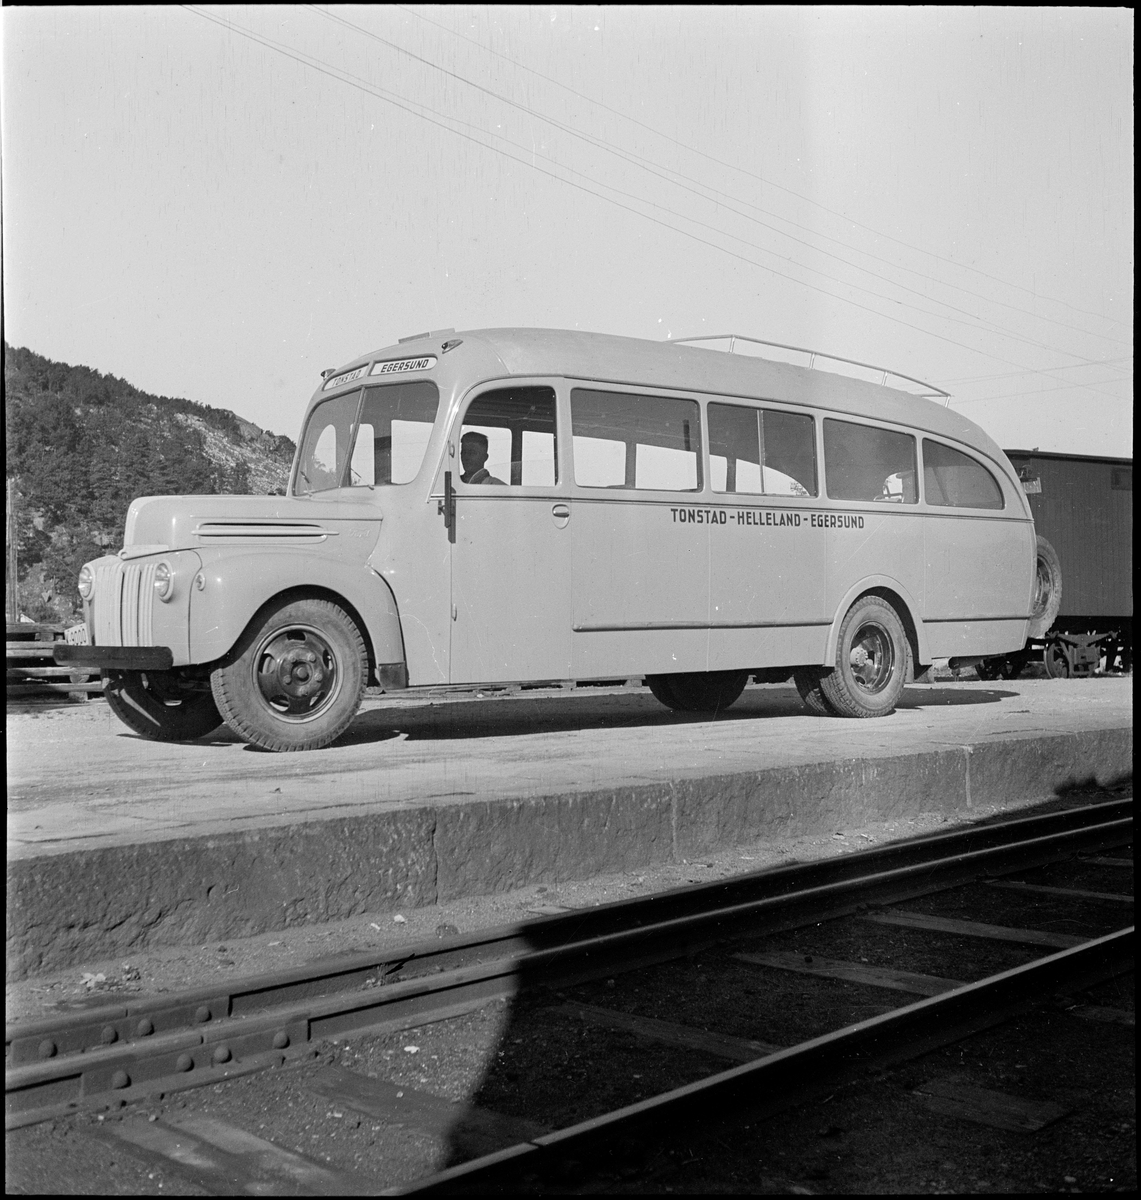 En buss av merket "Ford" ved jernbaneskinner i Egersund. Bussen gikk i ruta Tonstad-Helleland-Egersund.